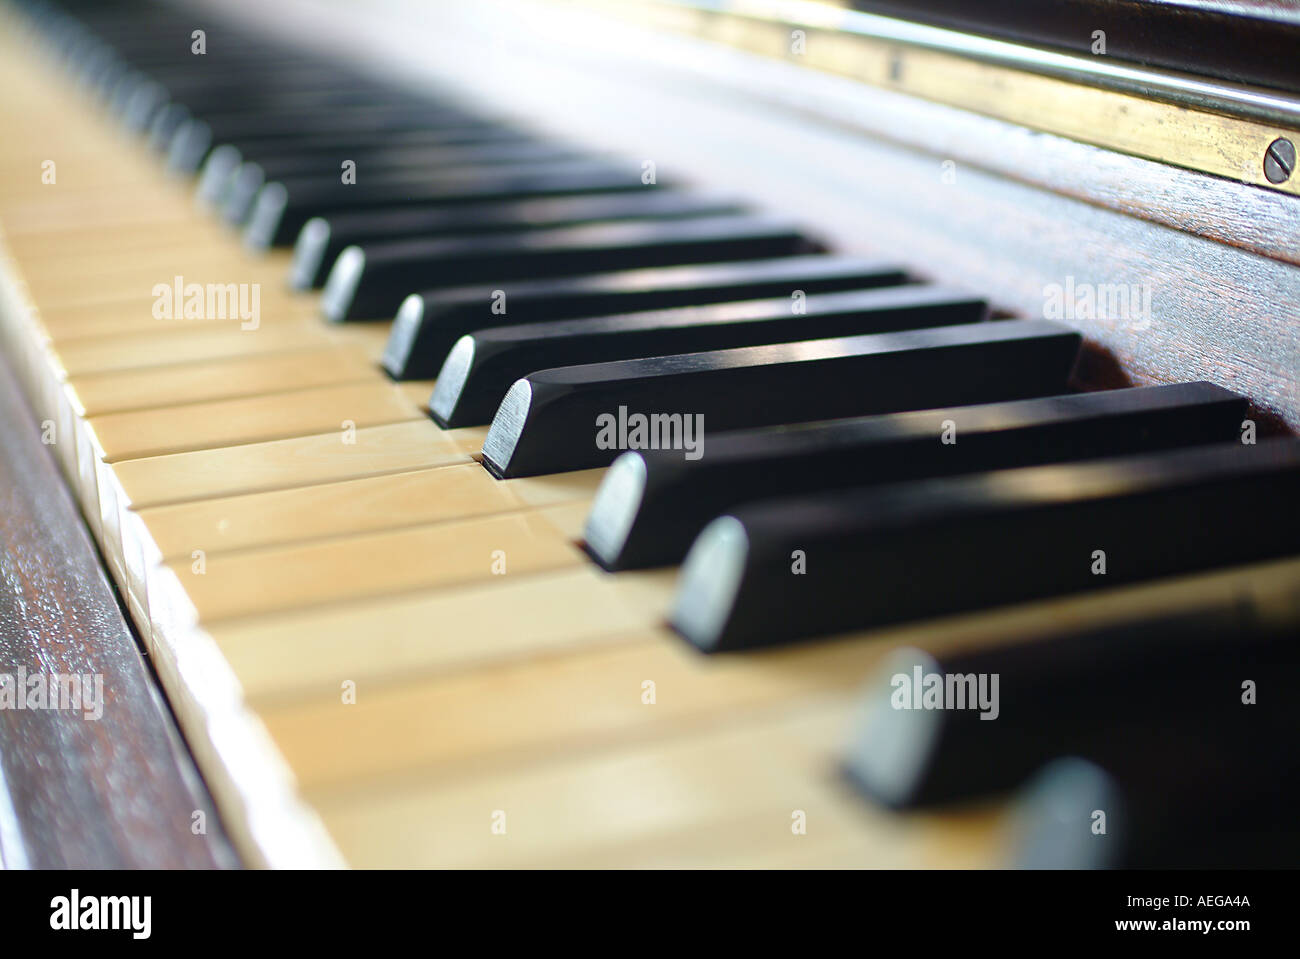 Sweet Home Musiknoten Klavier-Tastatur schwarz weiße Holz Holz Skala klingt Akkorden große schwere abstrakter Begriff Sonstige Musik Stockfoto